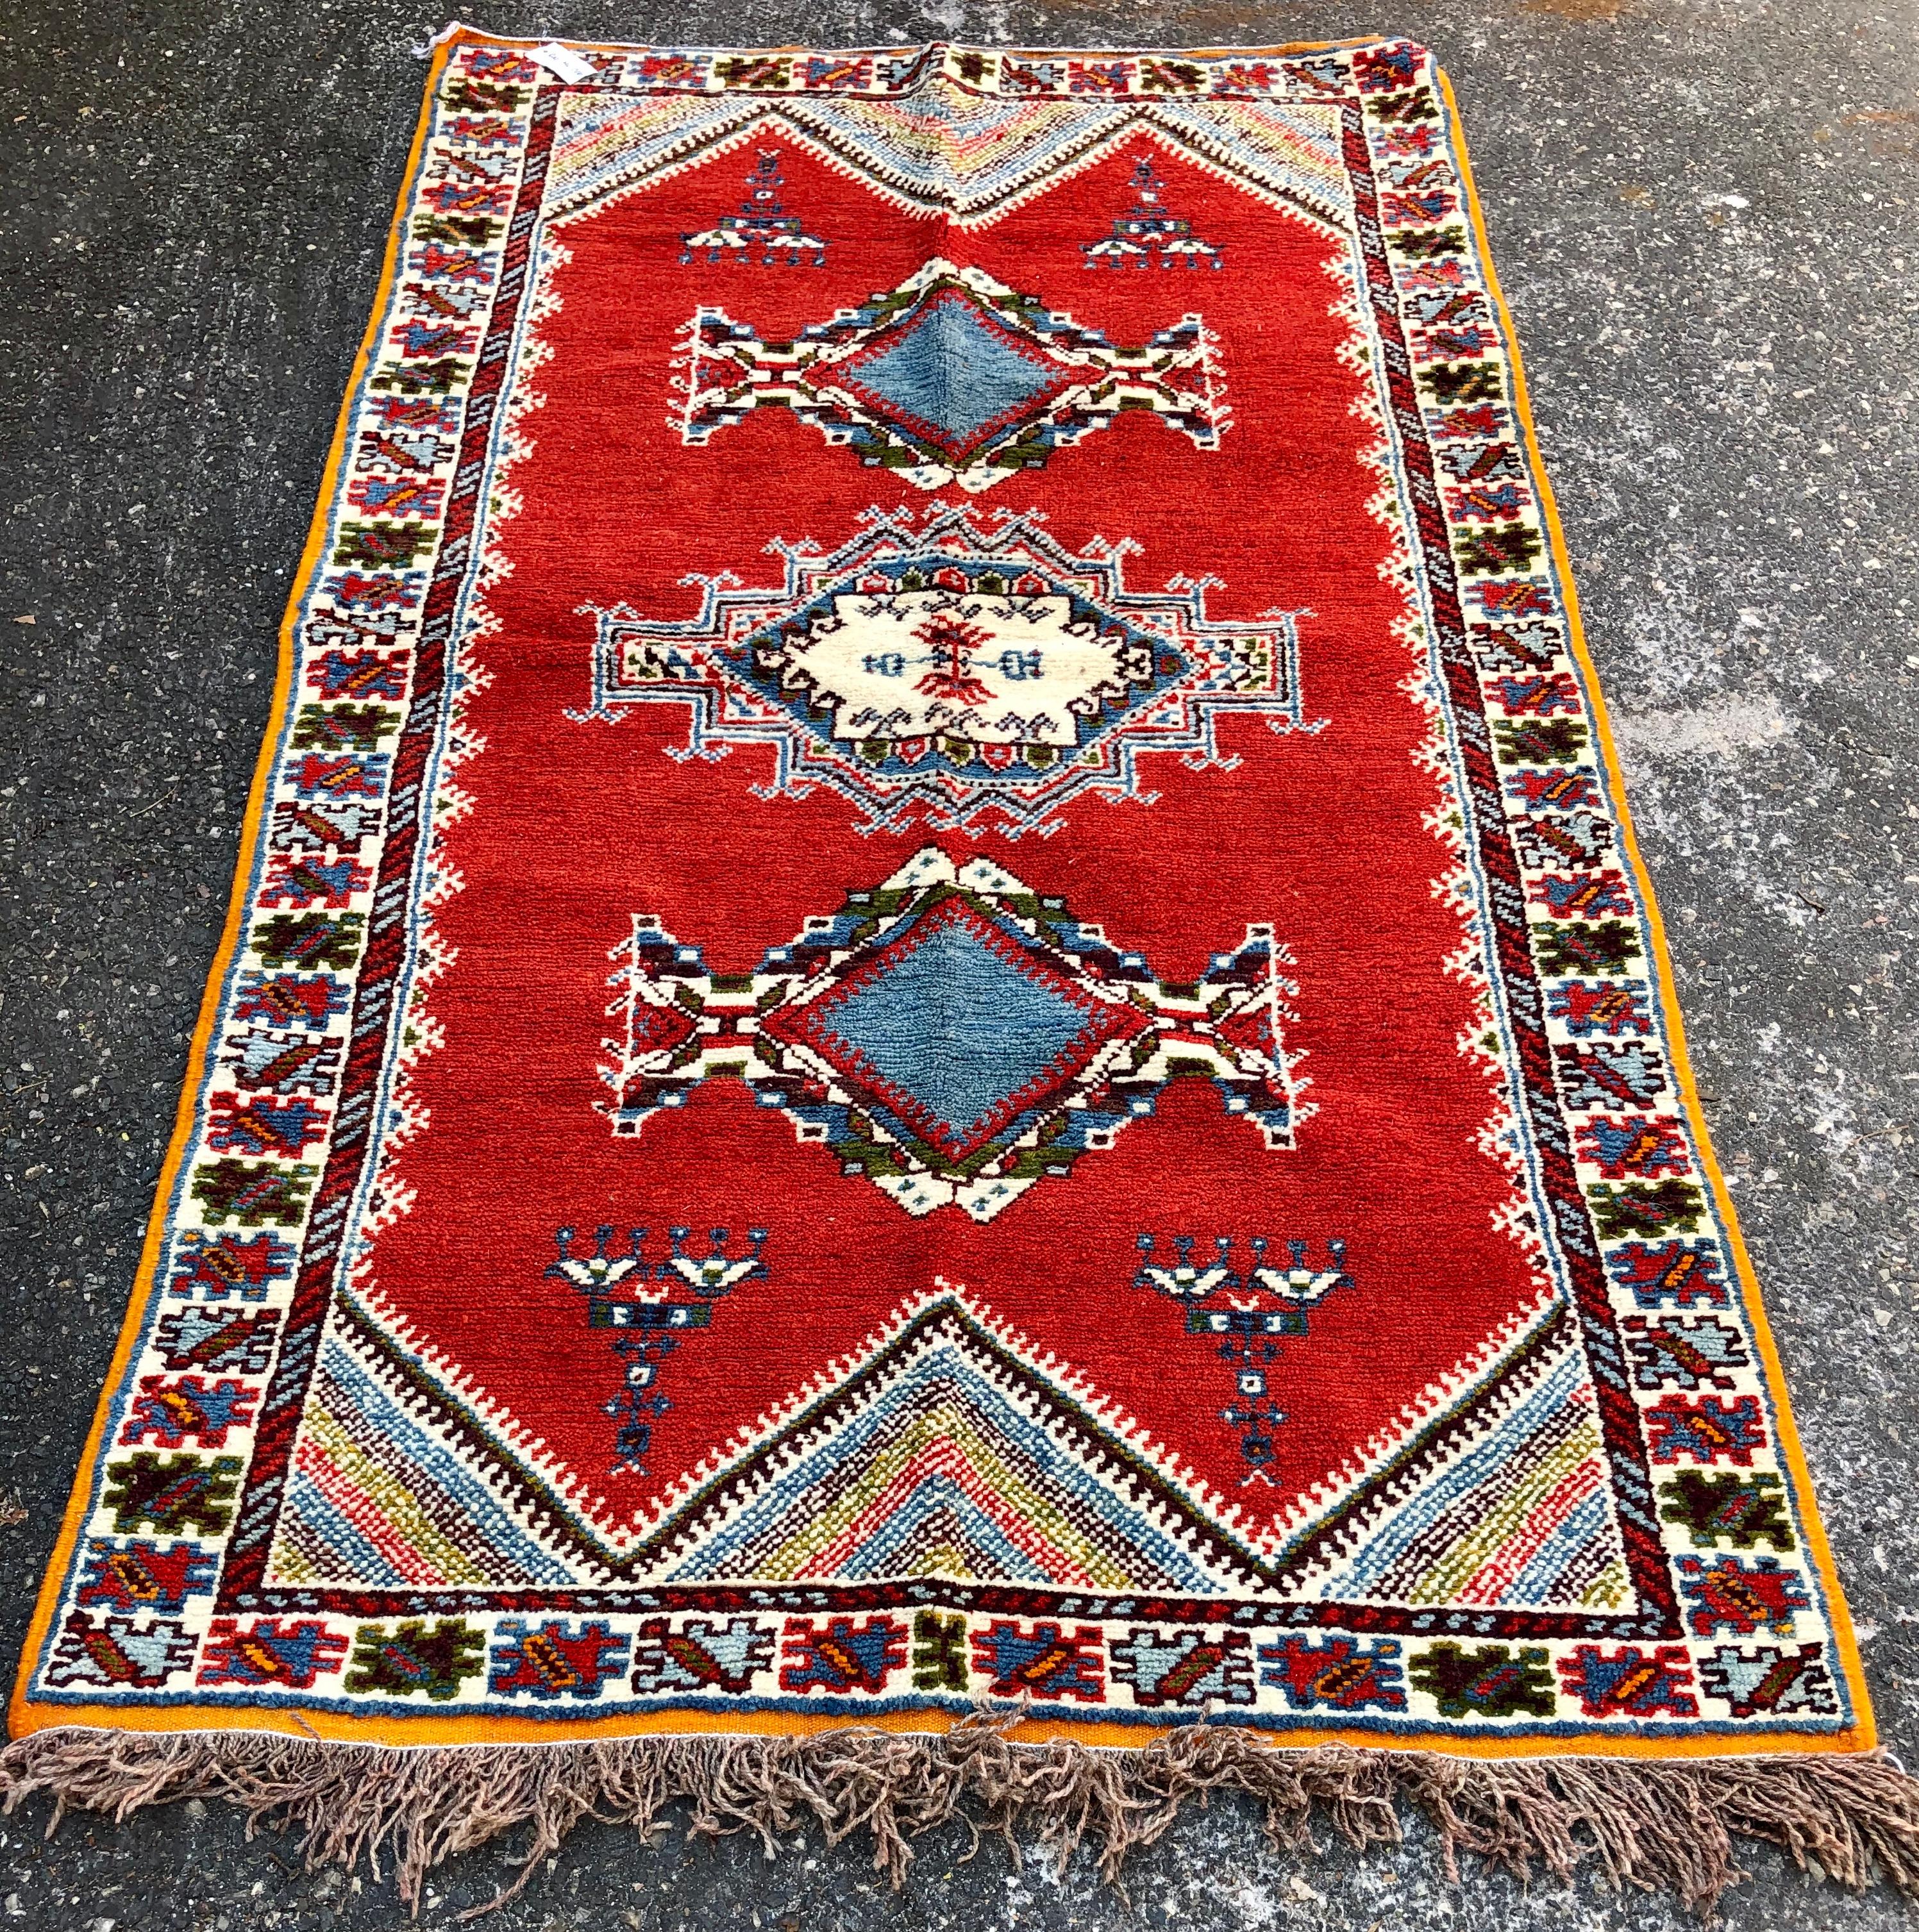 Ein einzigartiger handgewebter marokkanischer Stammesteppich aus Wolle. Der Teppich ist aus hochwertiger Wolle aus lokaler Produktion und organischen Pflanzenfarben fein gearbeitet. Der handgewebte Teppich zeigt komplizierte geometrische Motive in